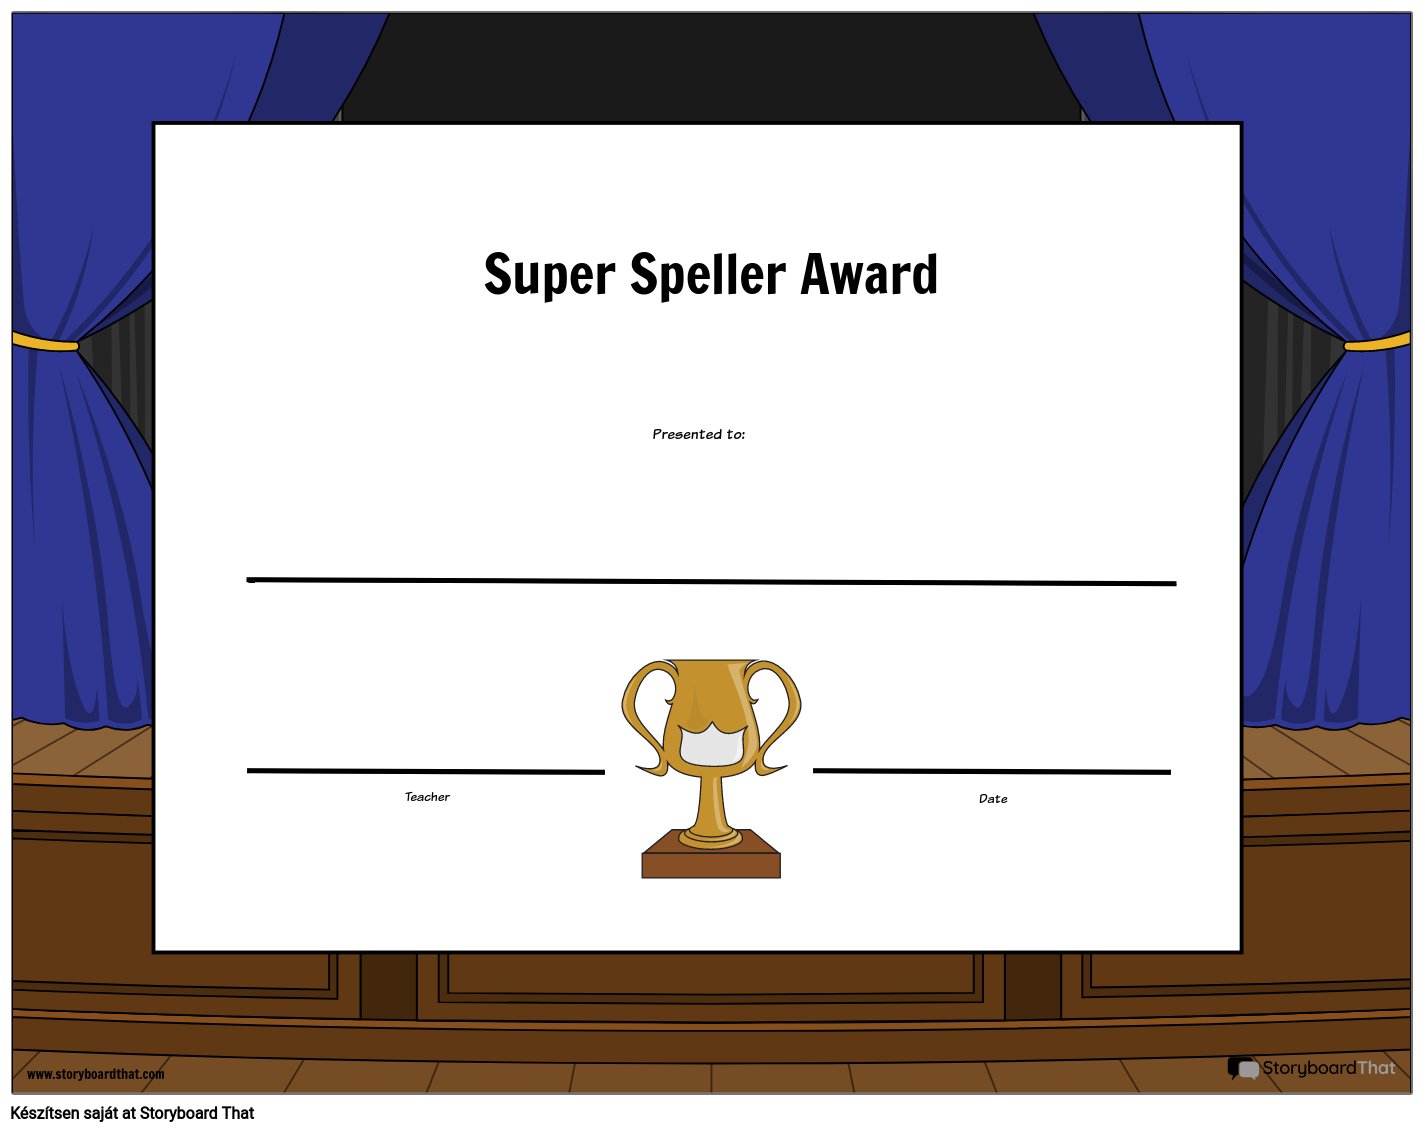 Super Speller -díj